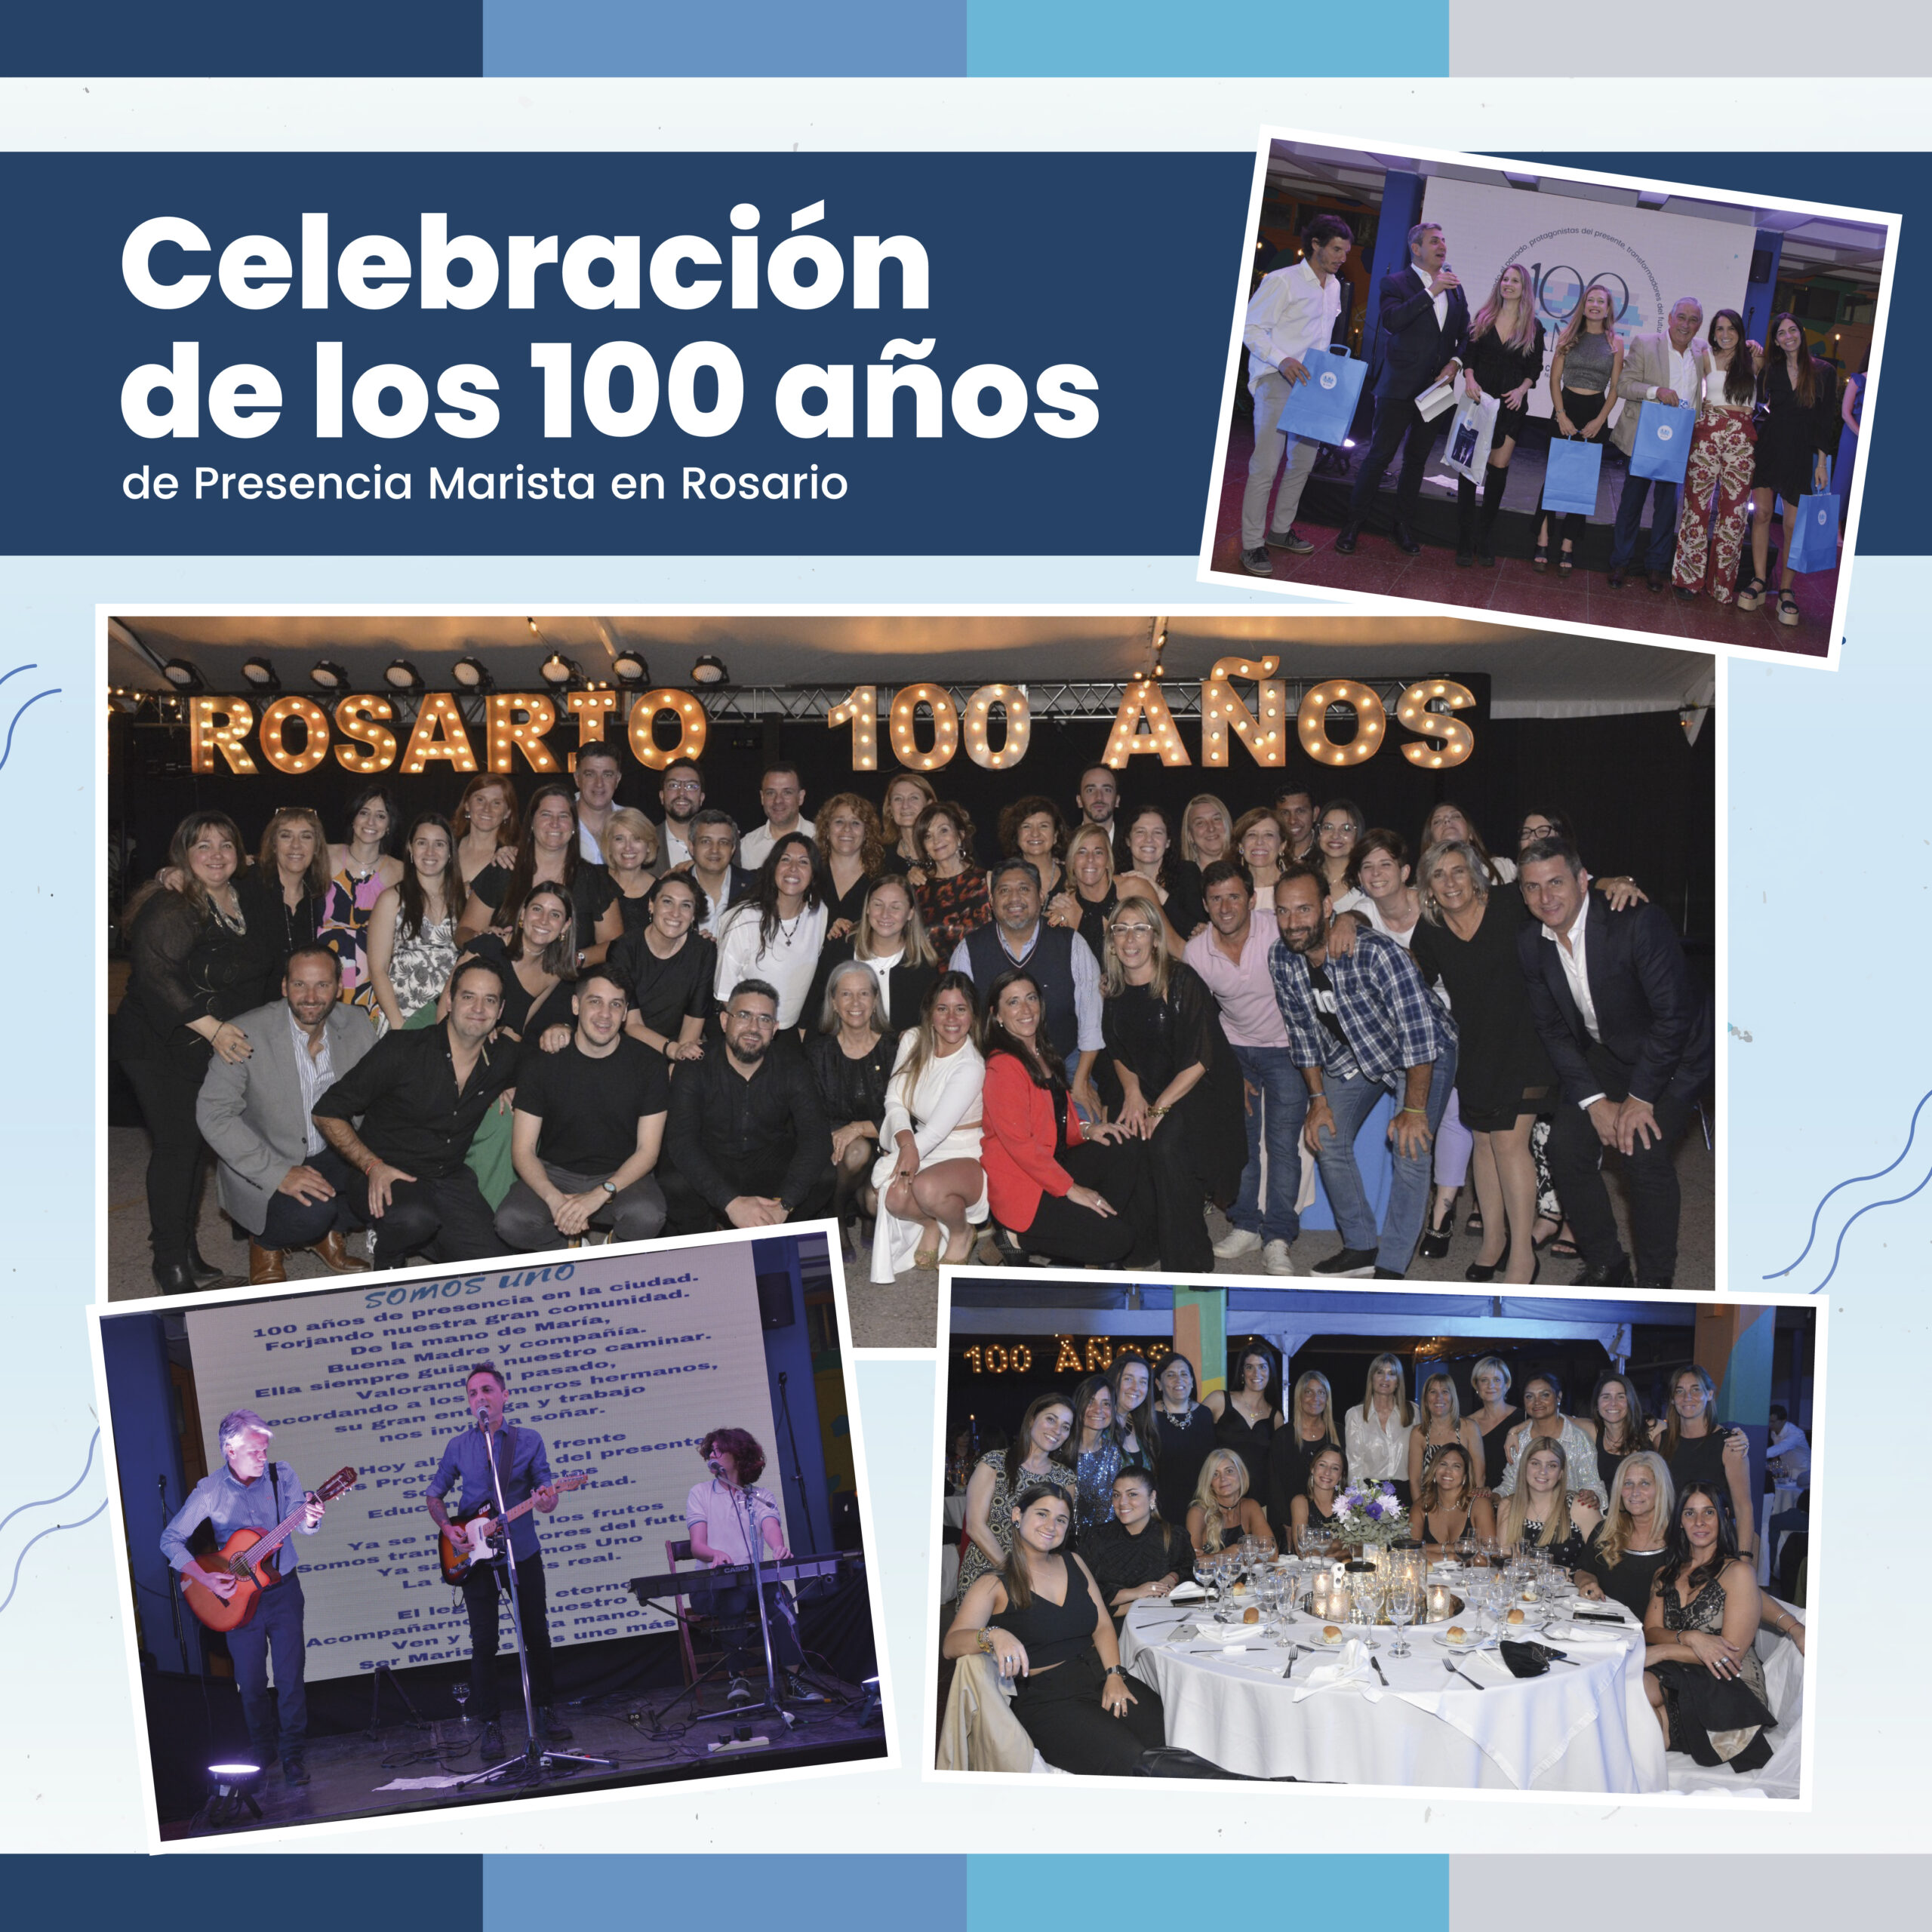 Imagen Celebración de los 100 años de Presencia Marista en Rosario.